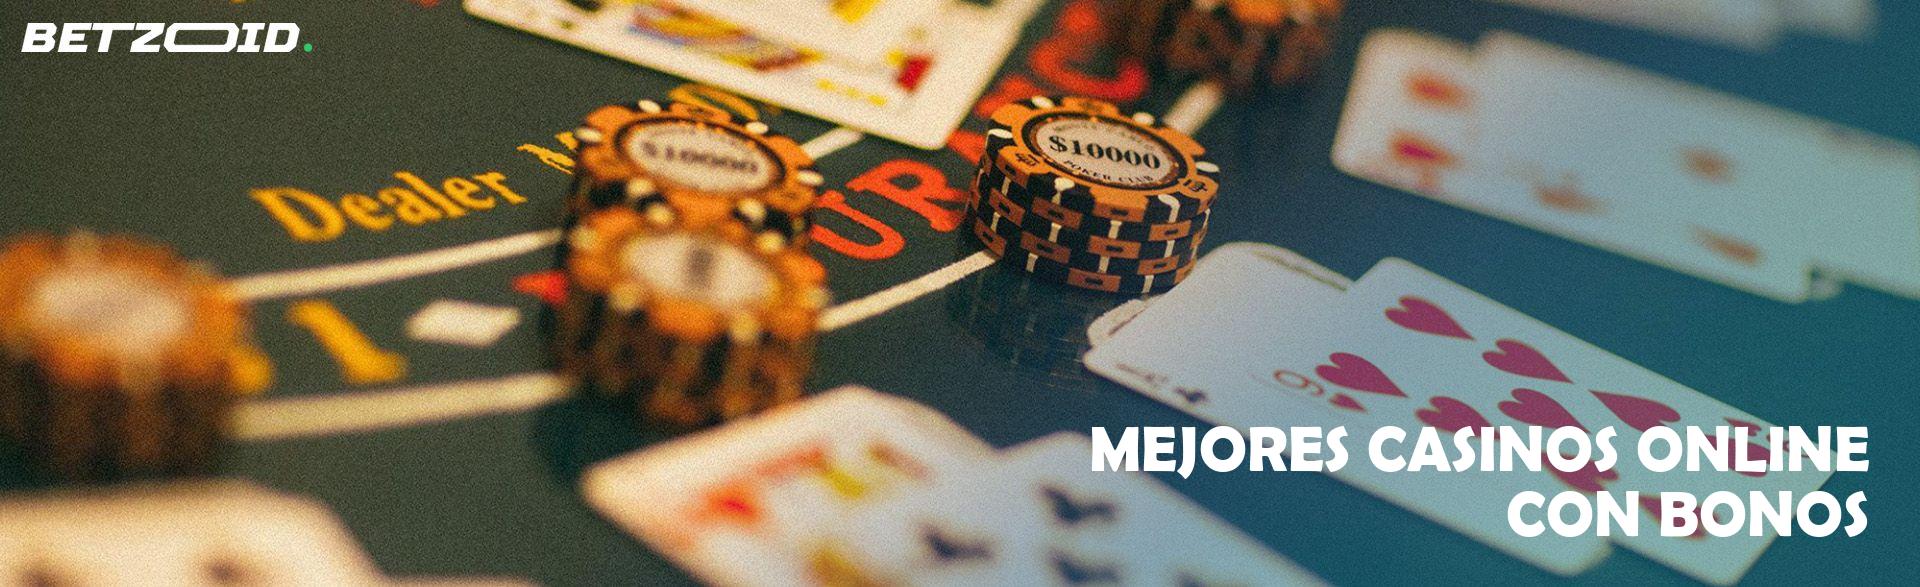 Mejores Casinos Online con Bonos.